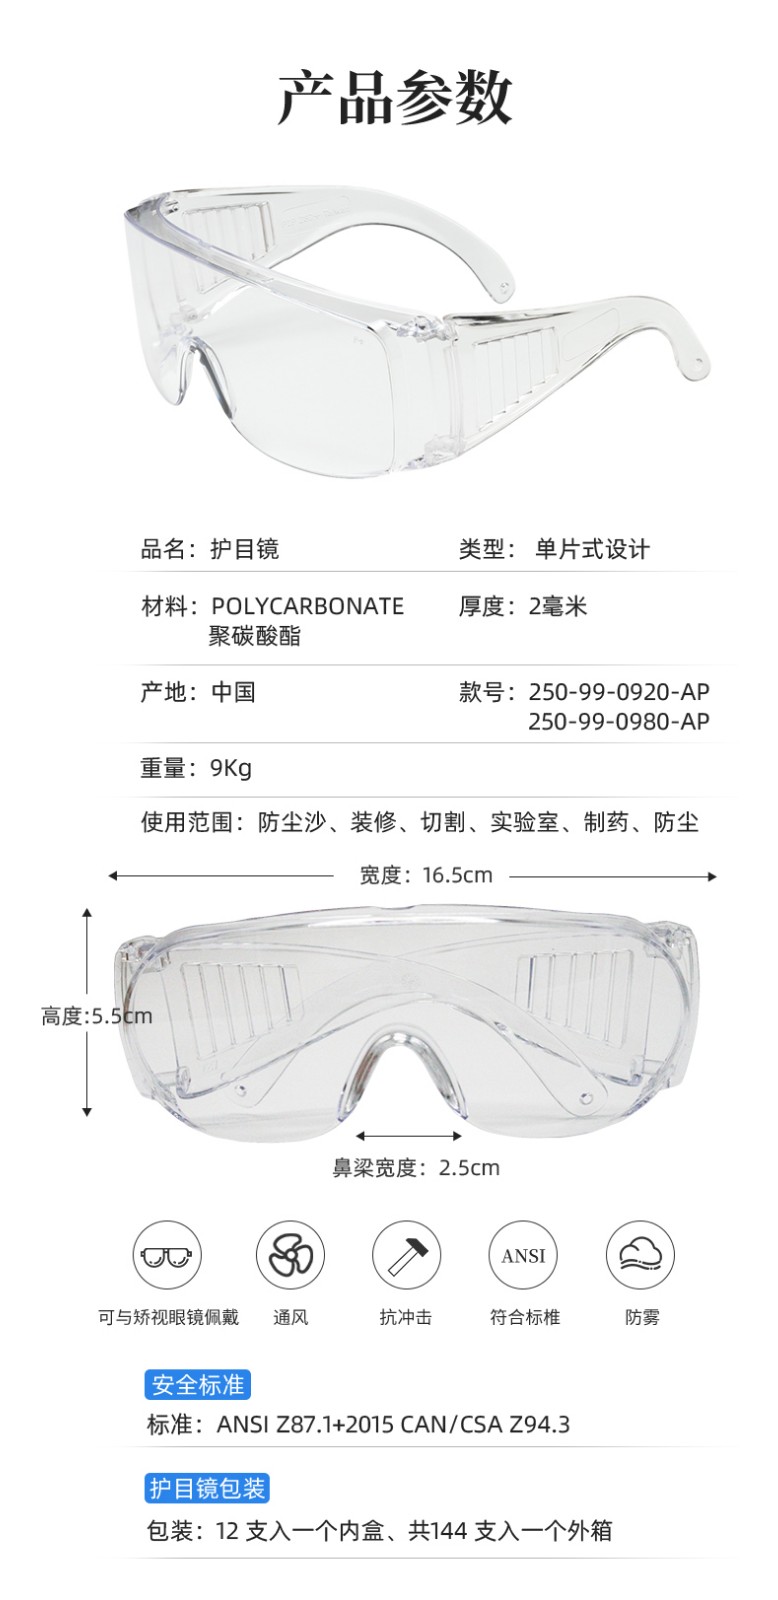 PIP 250-99-0920-AP防雾防刮擦防紫外线防护眼镜图片9